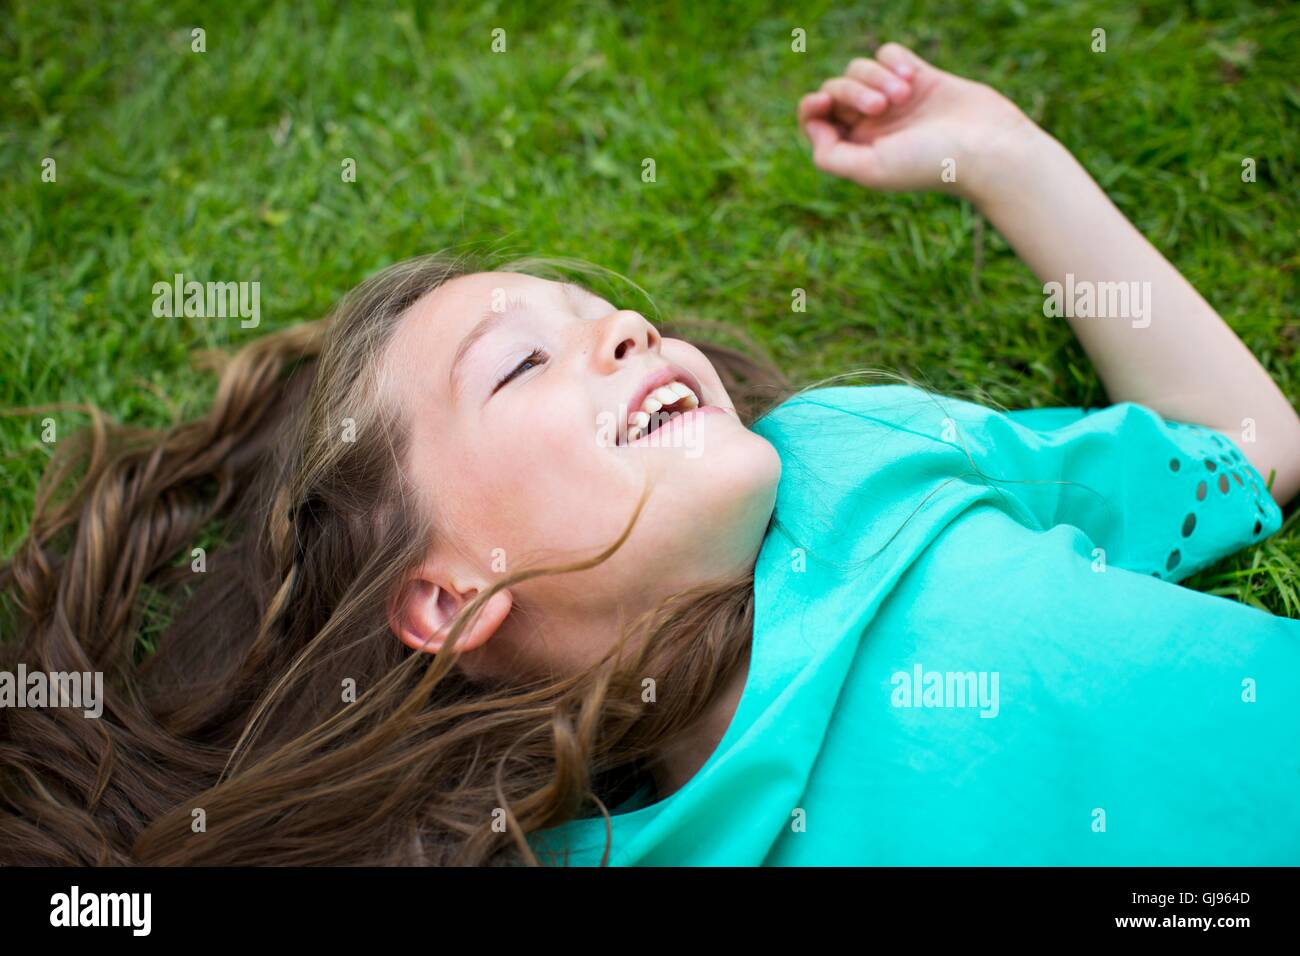 Parution de la propriété. Parution du modèle. Jeune fille couchée sur l'herbe, souriant. Banque D'Images